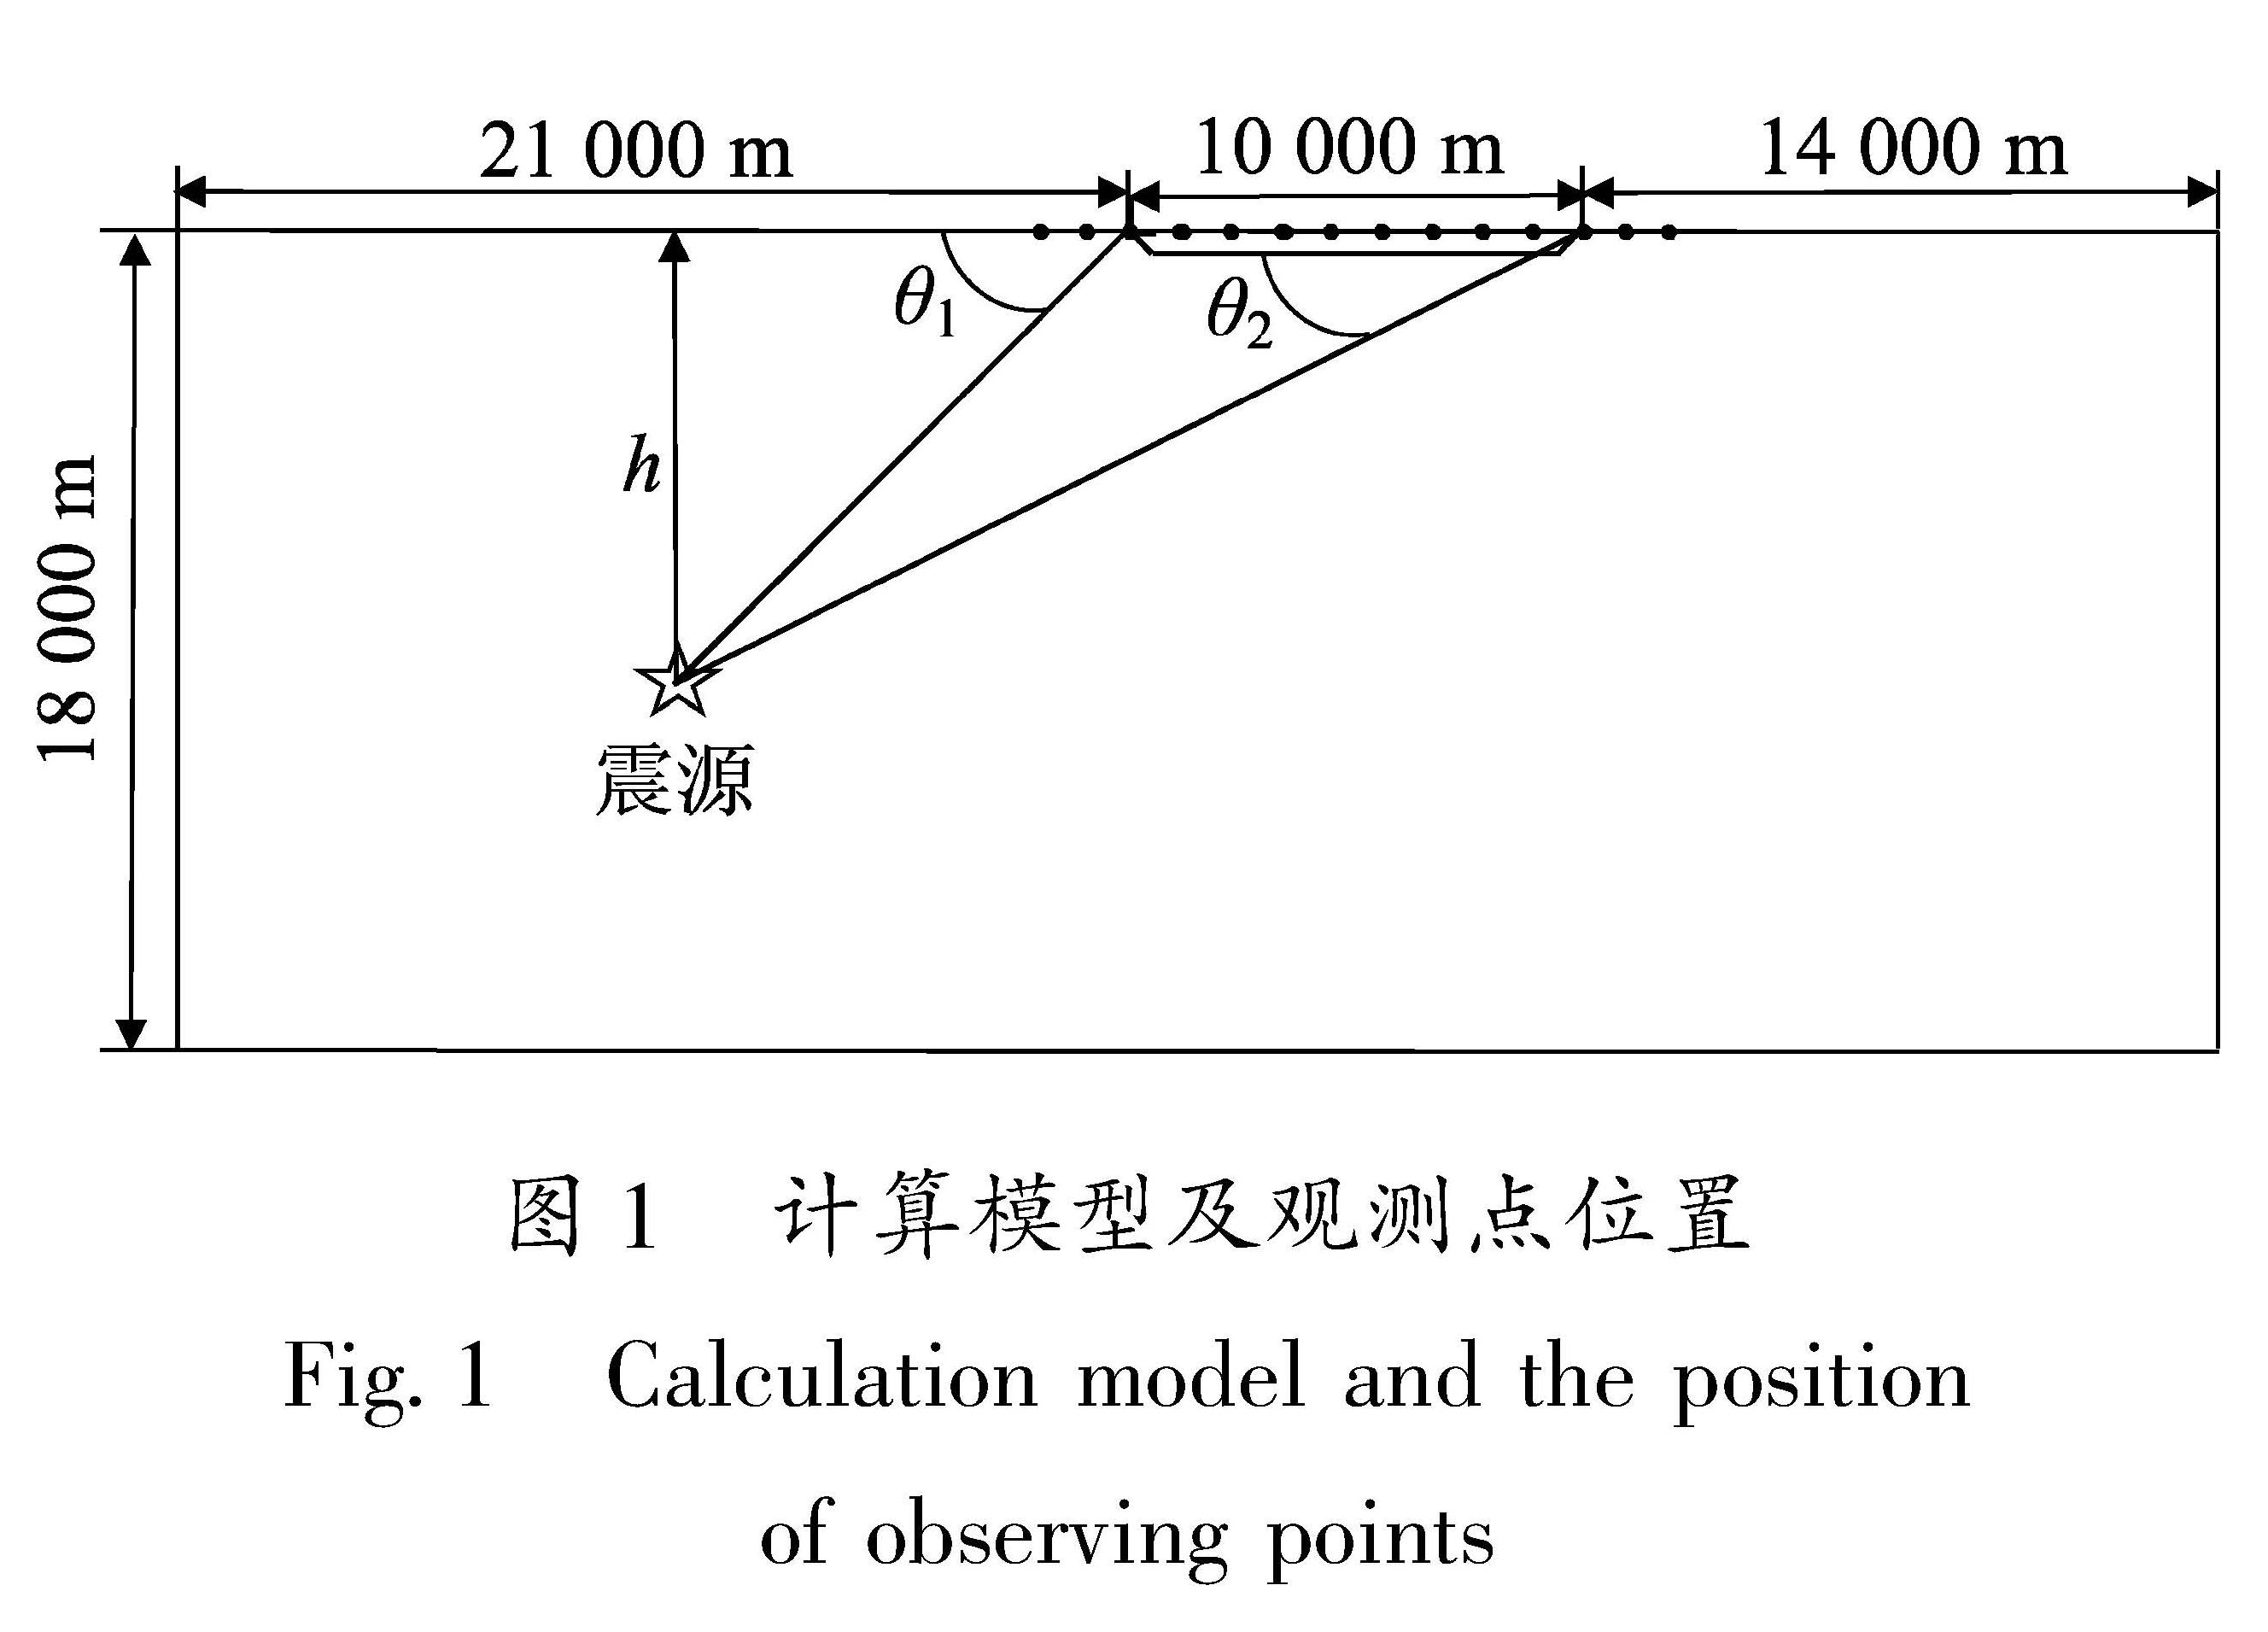 图1 计算模型及观测点位置<br/>Fig.1 Calculation model and the position of observing points